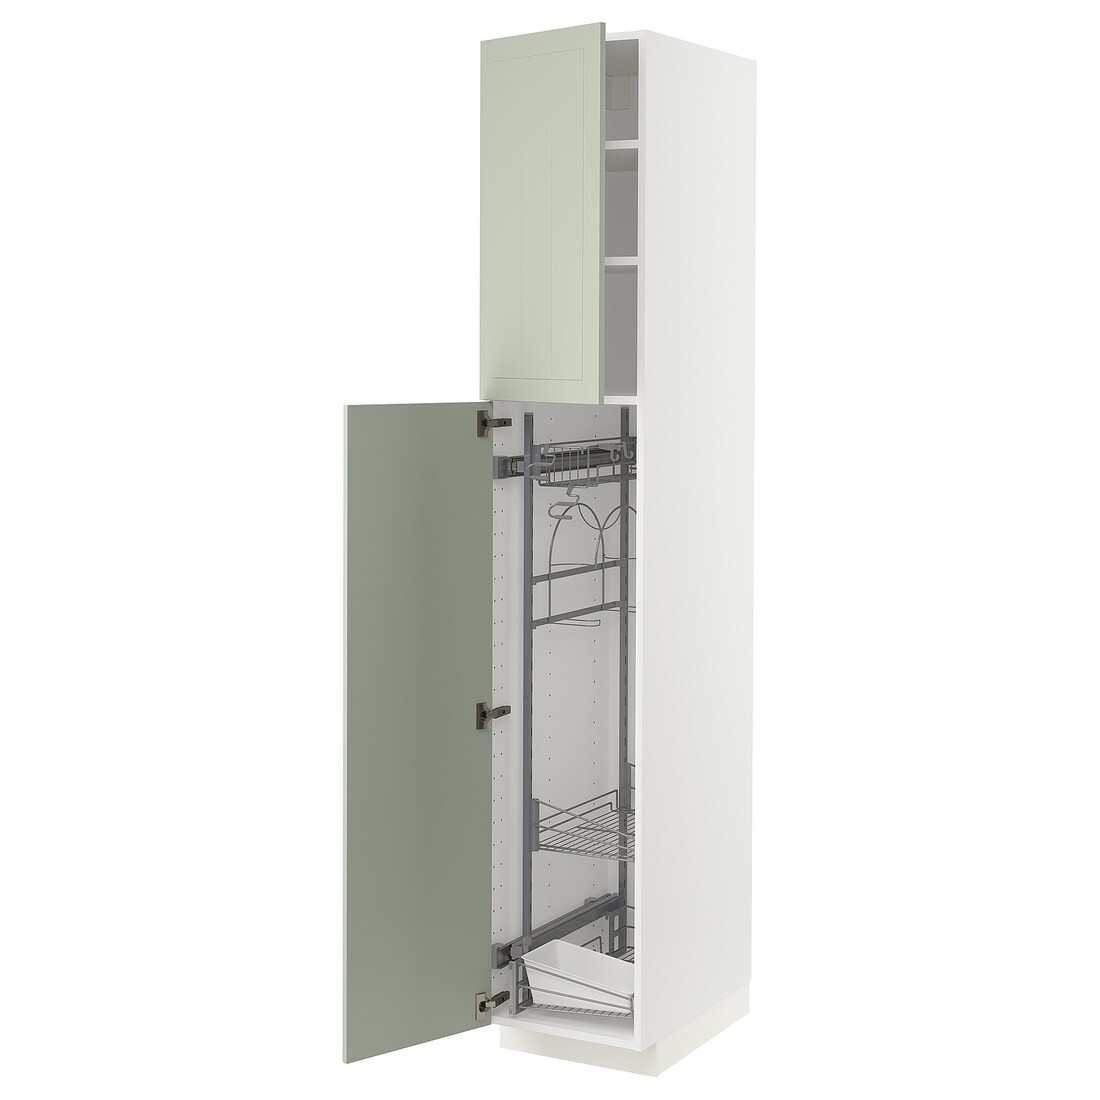 METOD МЕТОД Высокий шкаф с отделением для аксессуаров для уборки, белый / Stensund светло-зеленый, 40x60x220 см